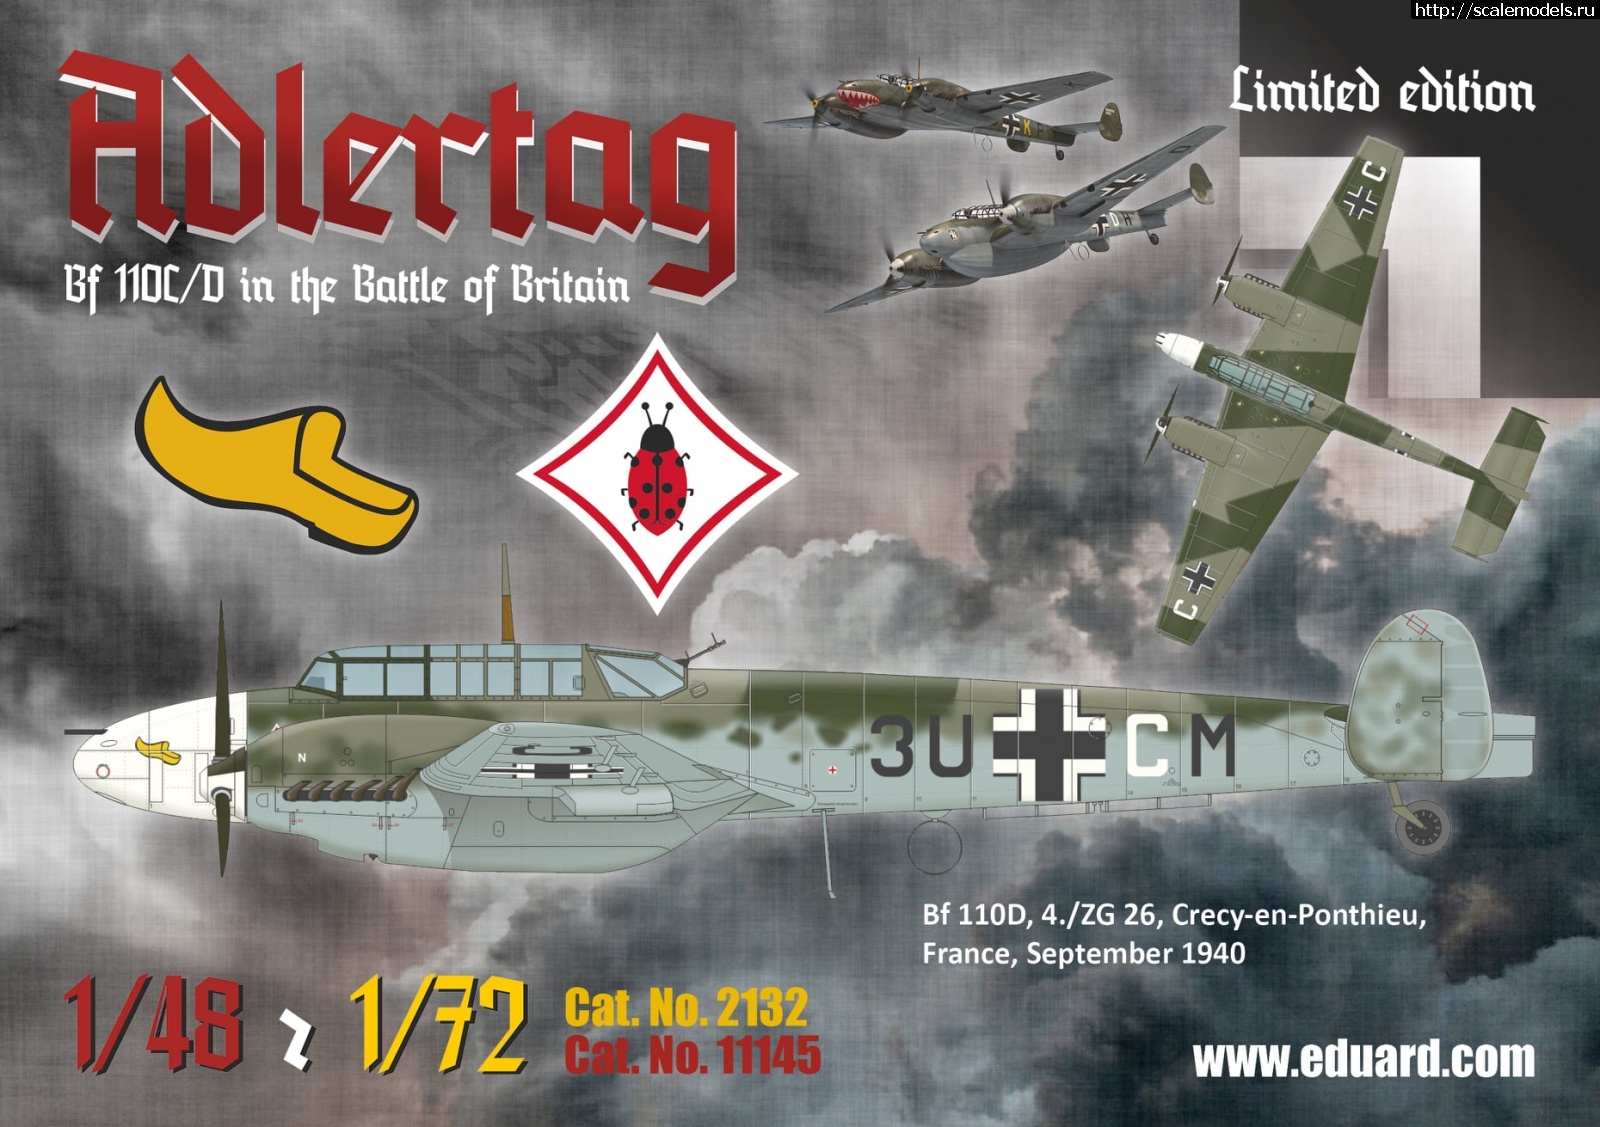 1604573783_123496370_3987467491268168_4546569886595453454_o.jpg :  Eduard 1/48  1/72 Messerschmitt Bf 110C/D Adlertag  